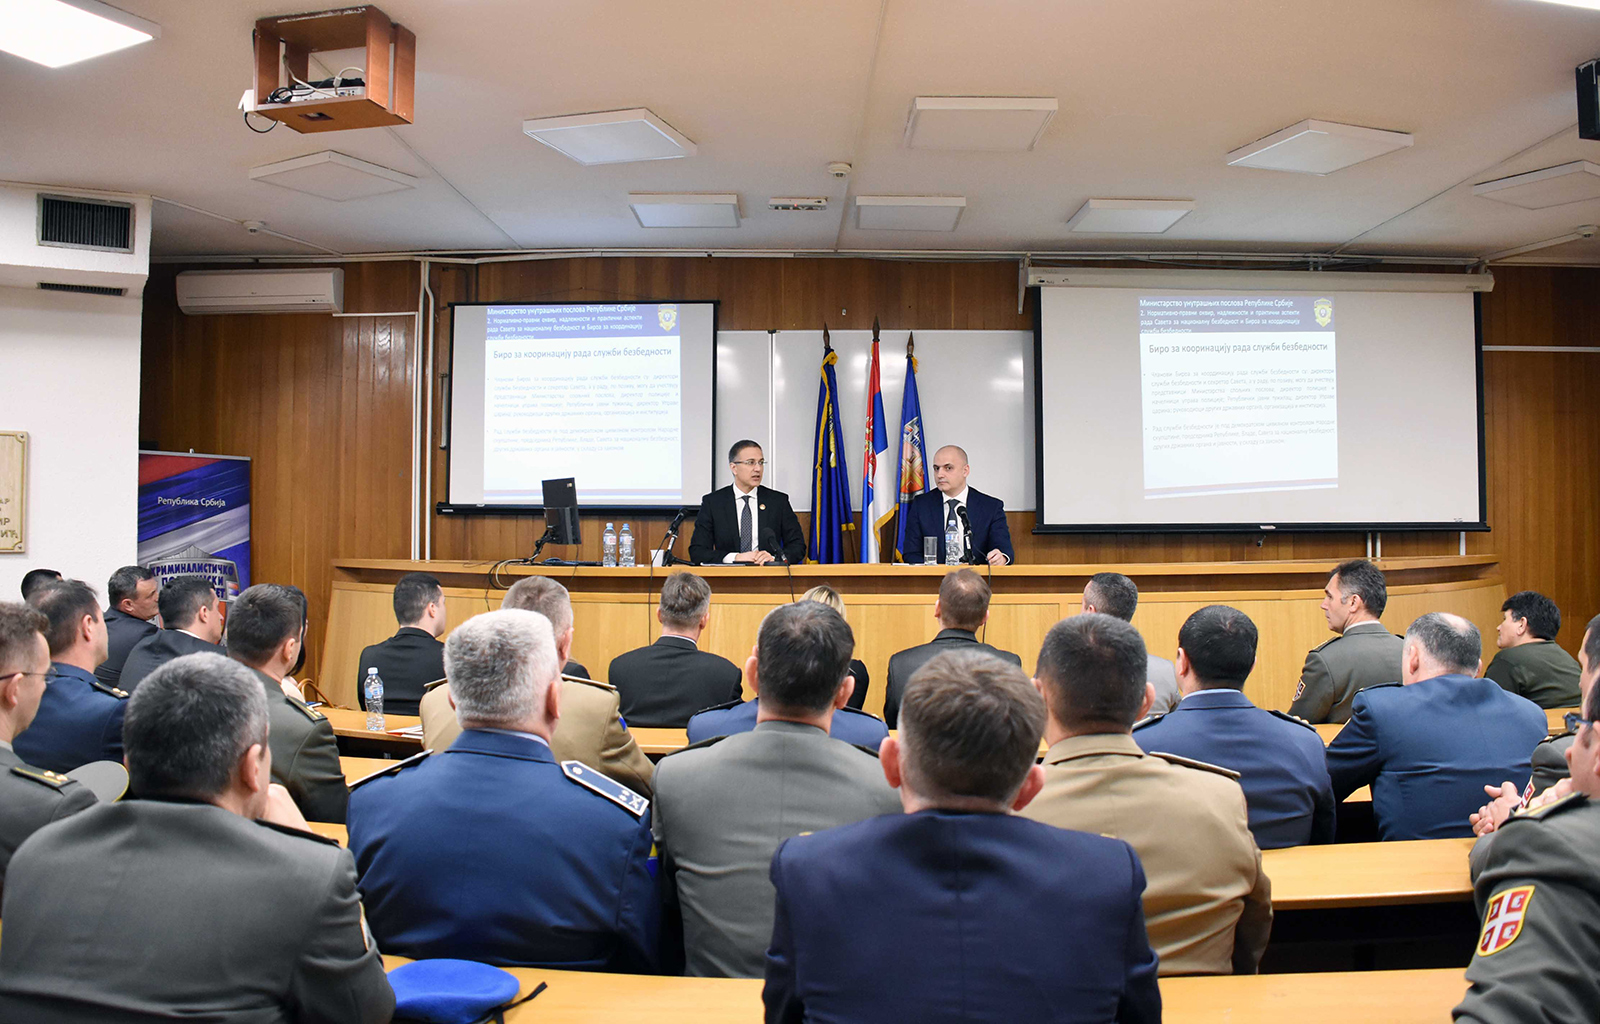 Стефановић: Савет за националну безбедност последњих година направио велики искорак у предвиђању потенцијалних криза